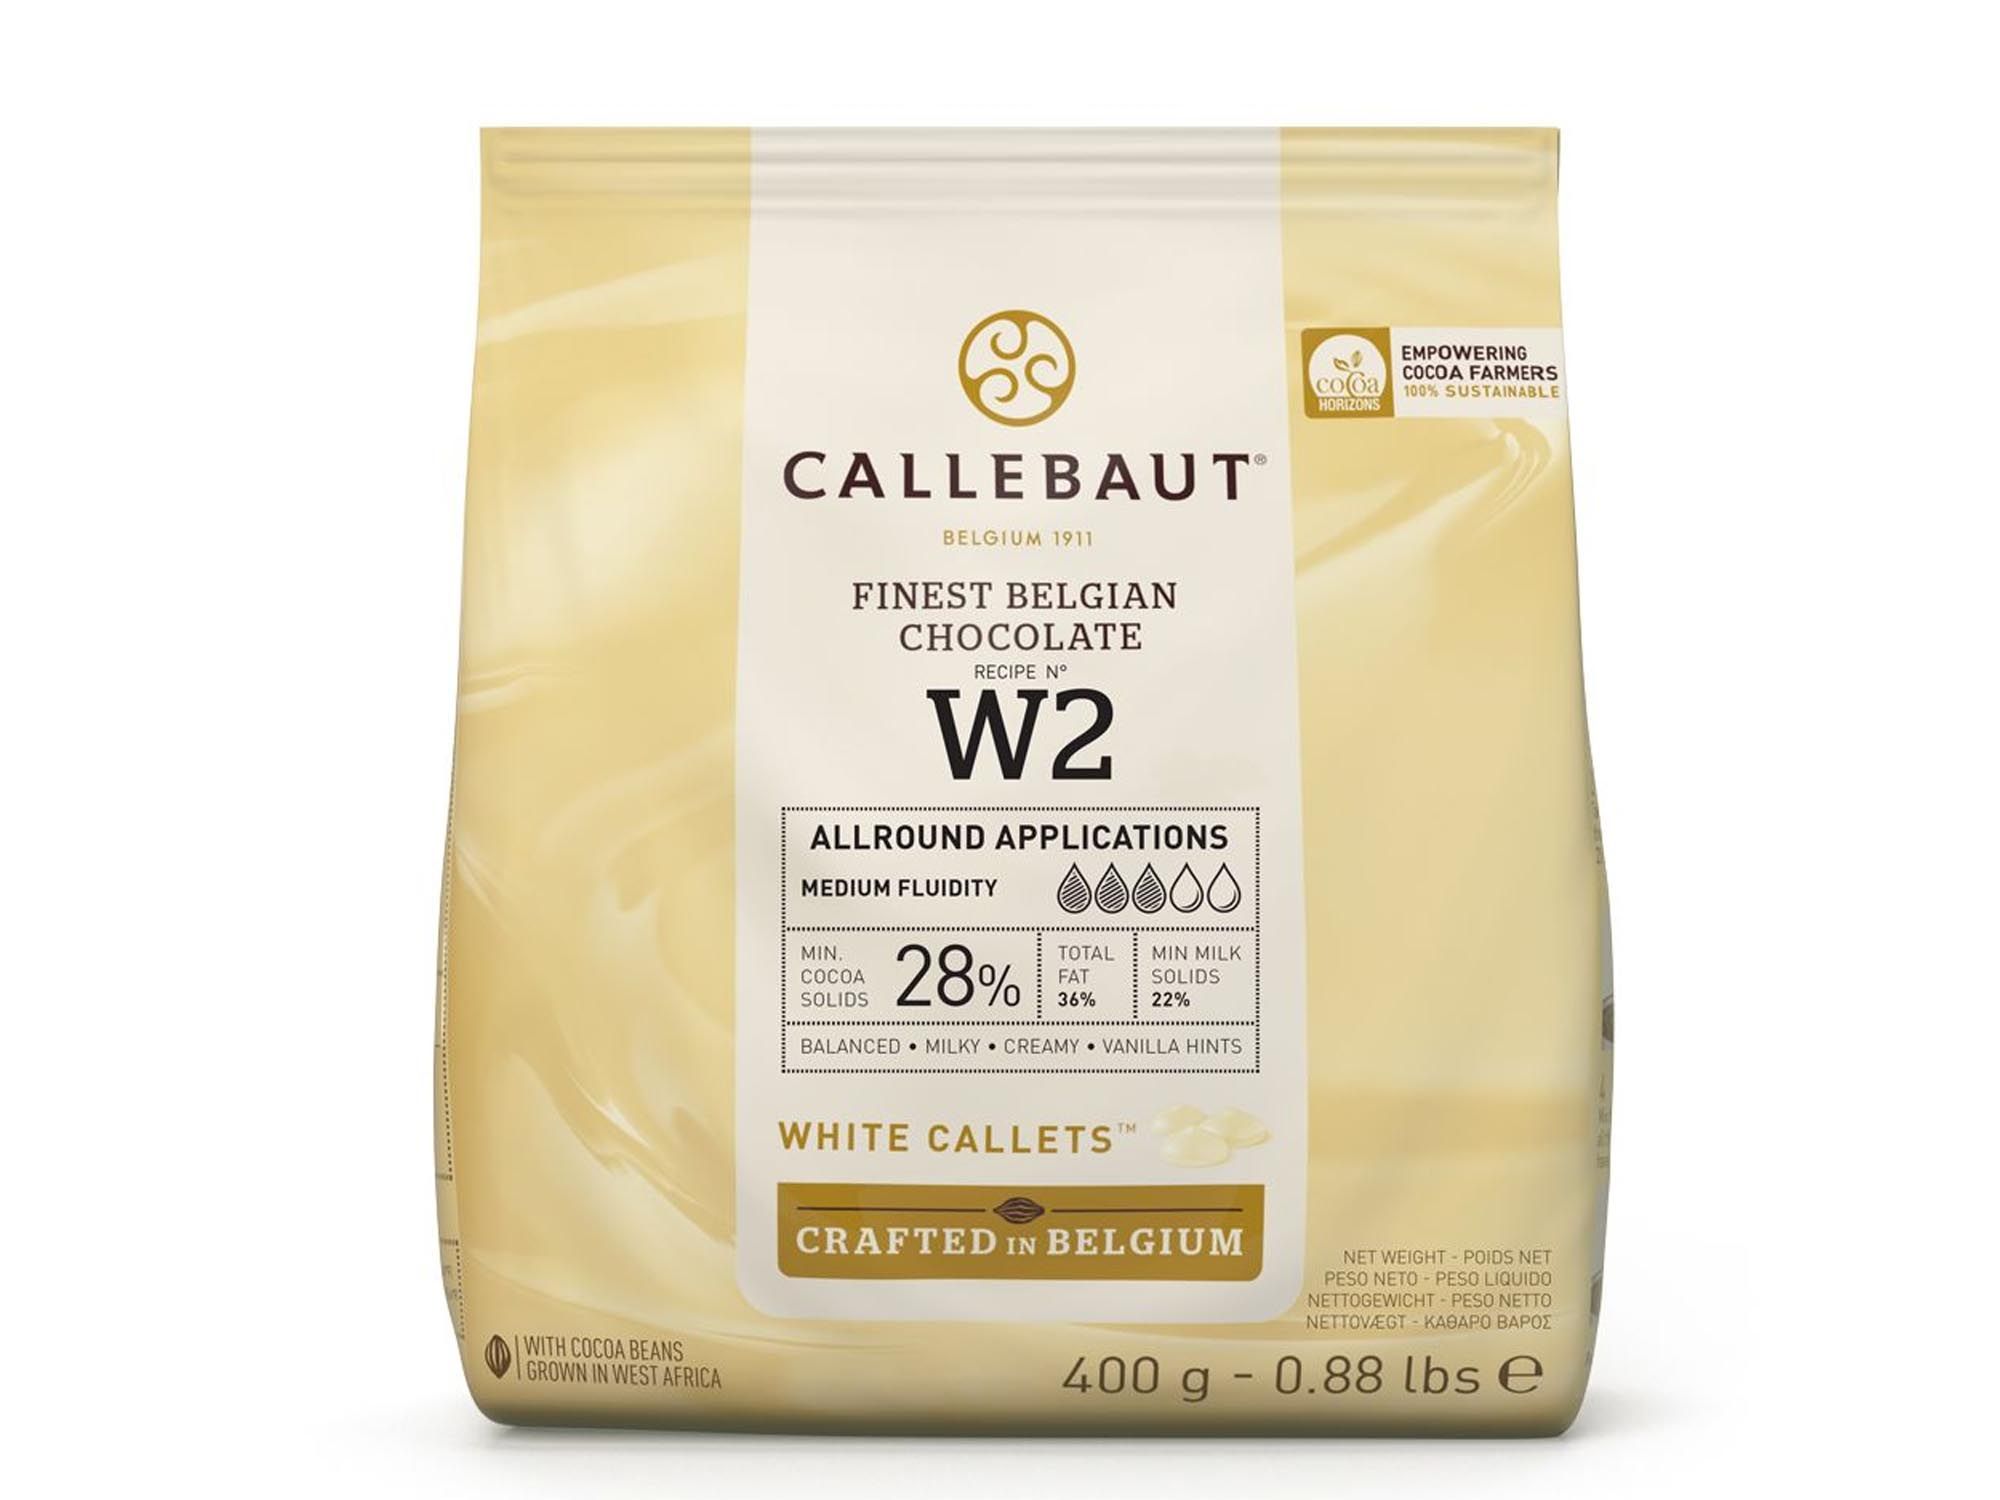 Schokolade Callebaut Weiß Callets 400g Beutel